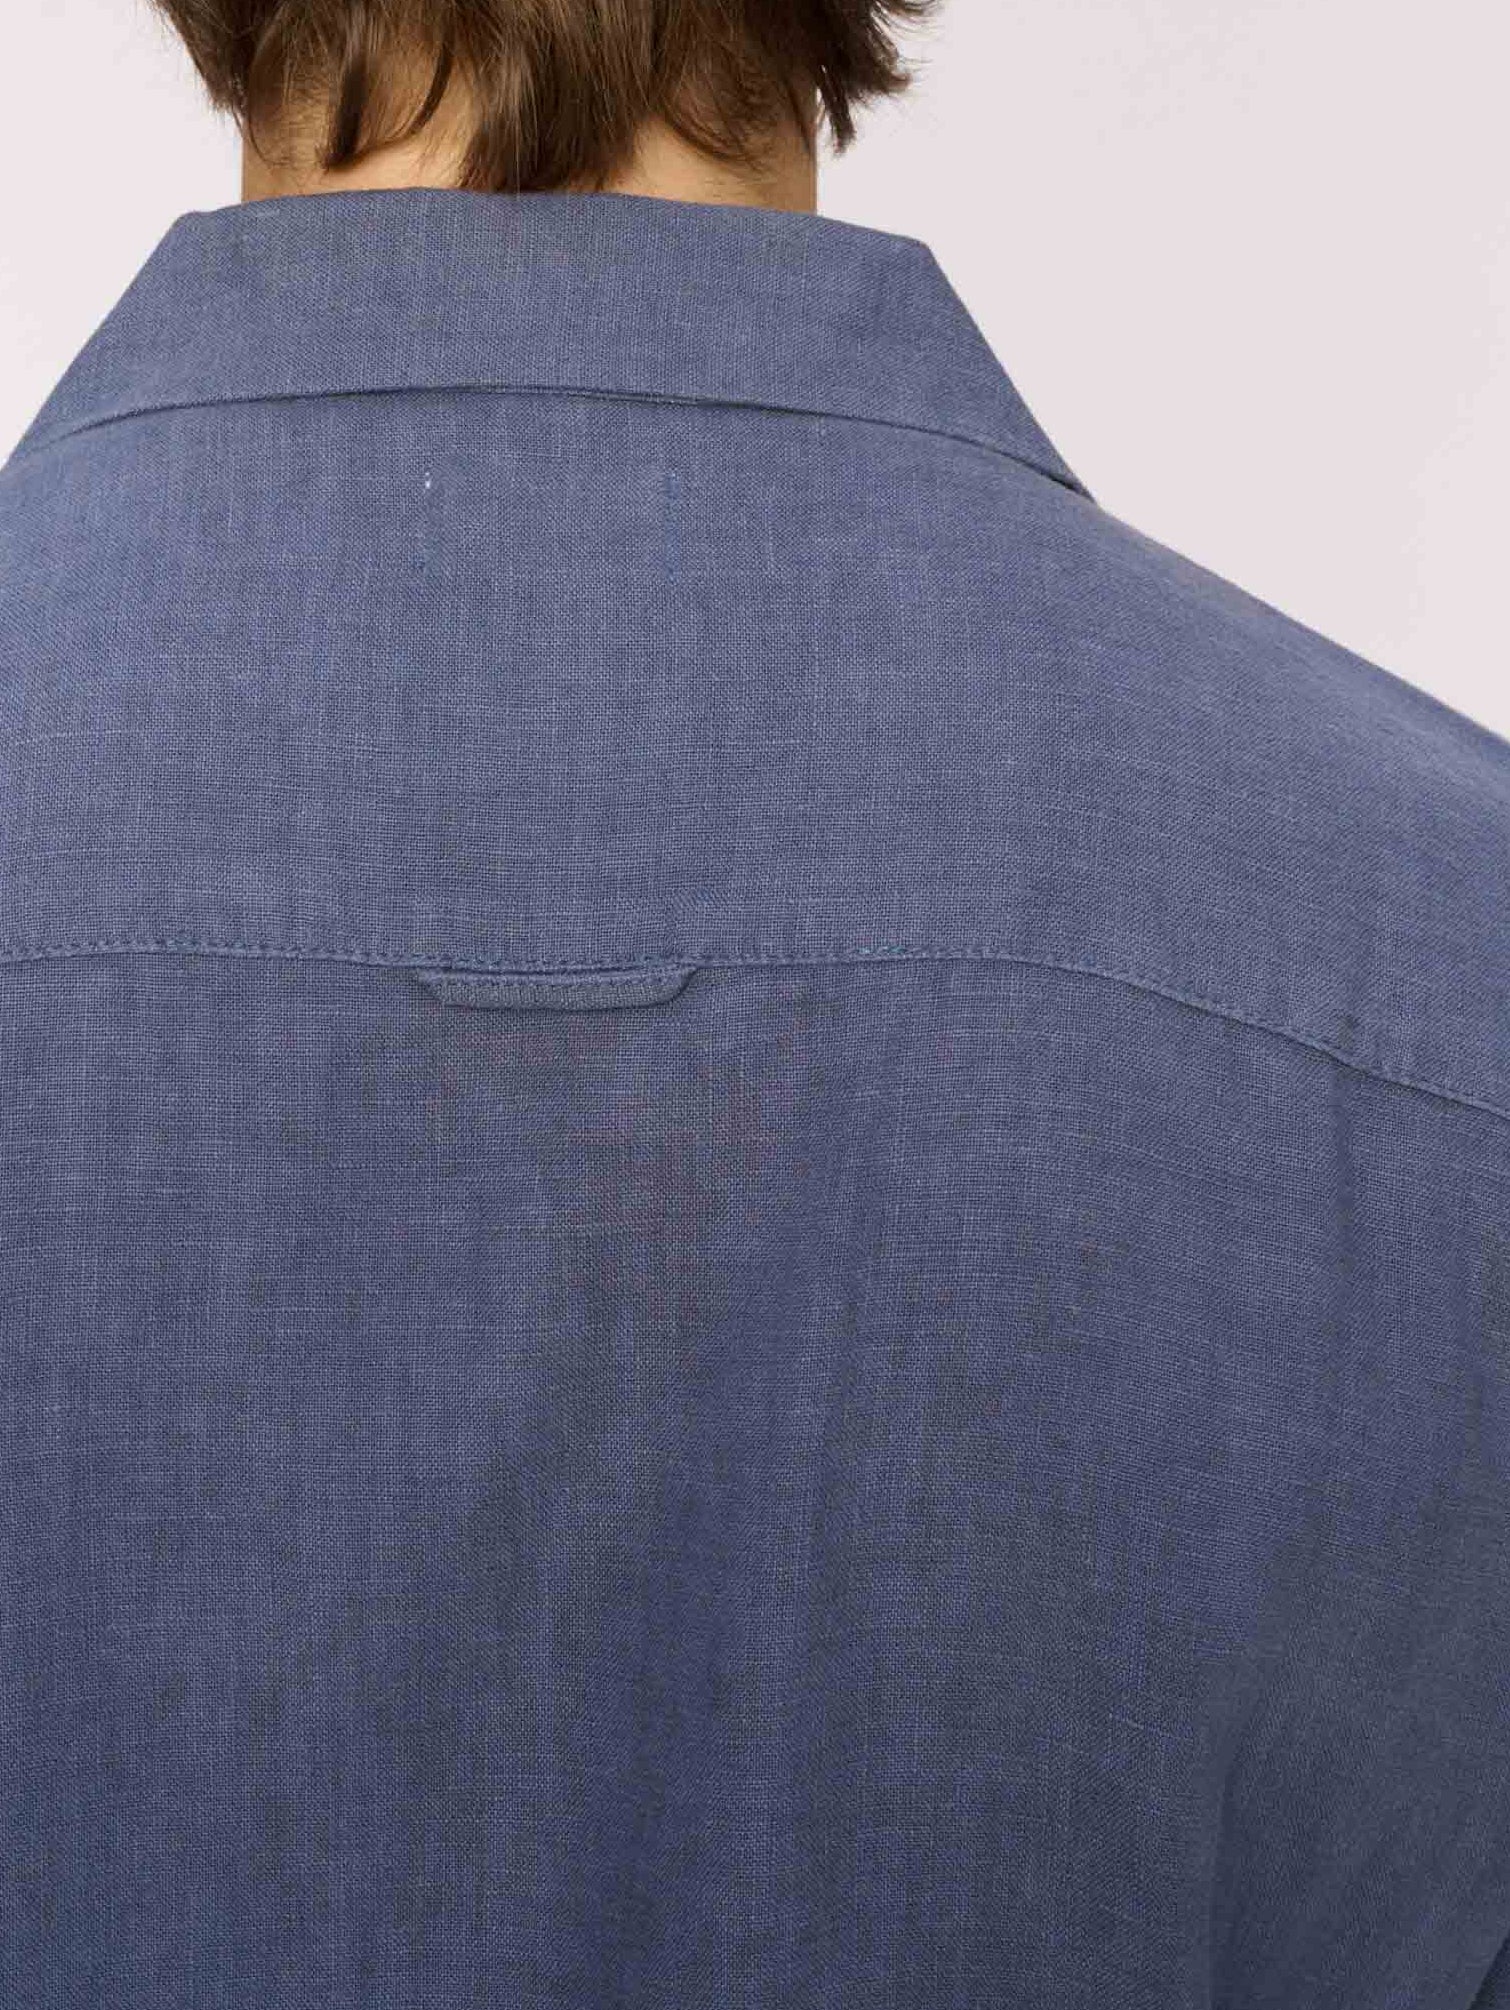 Hugh Shirt | Slate Blue Linen